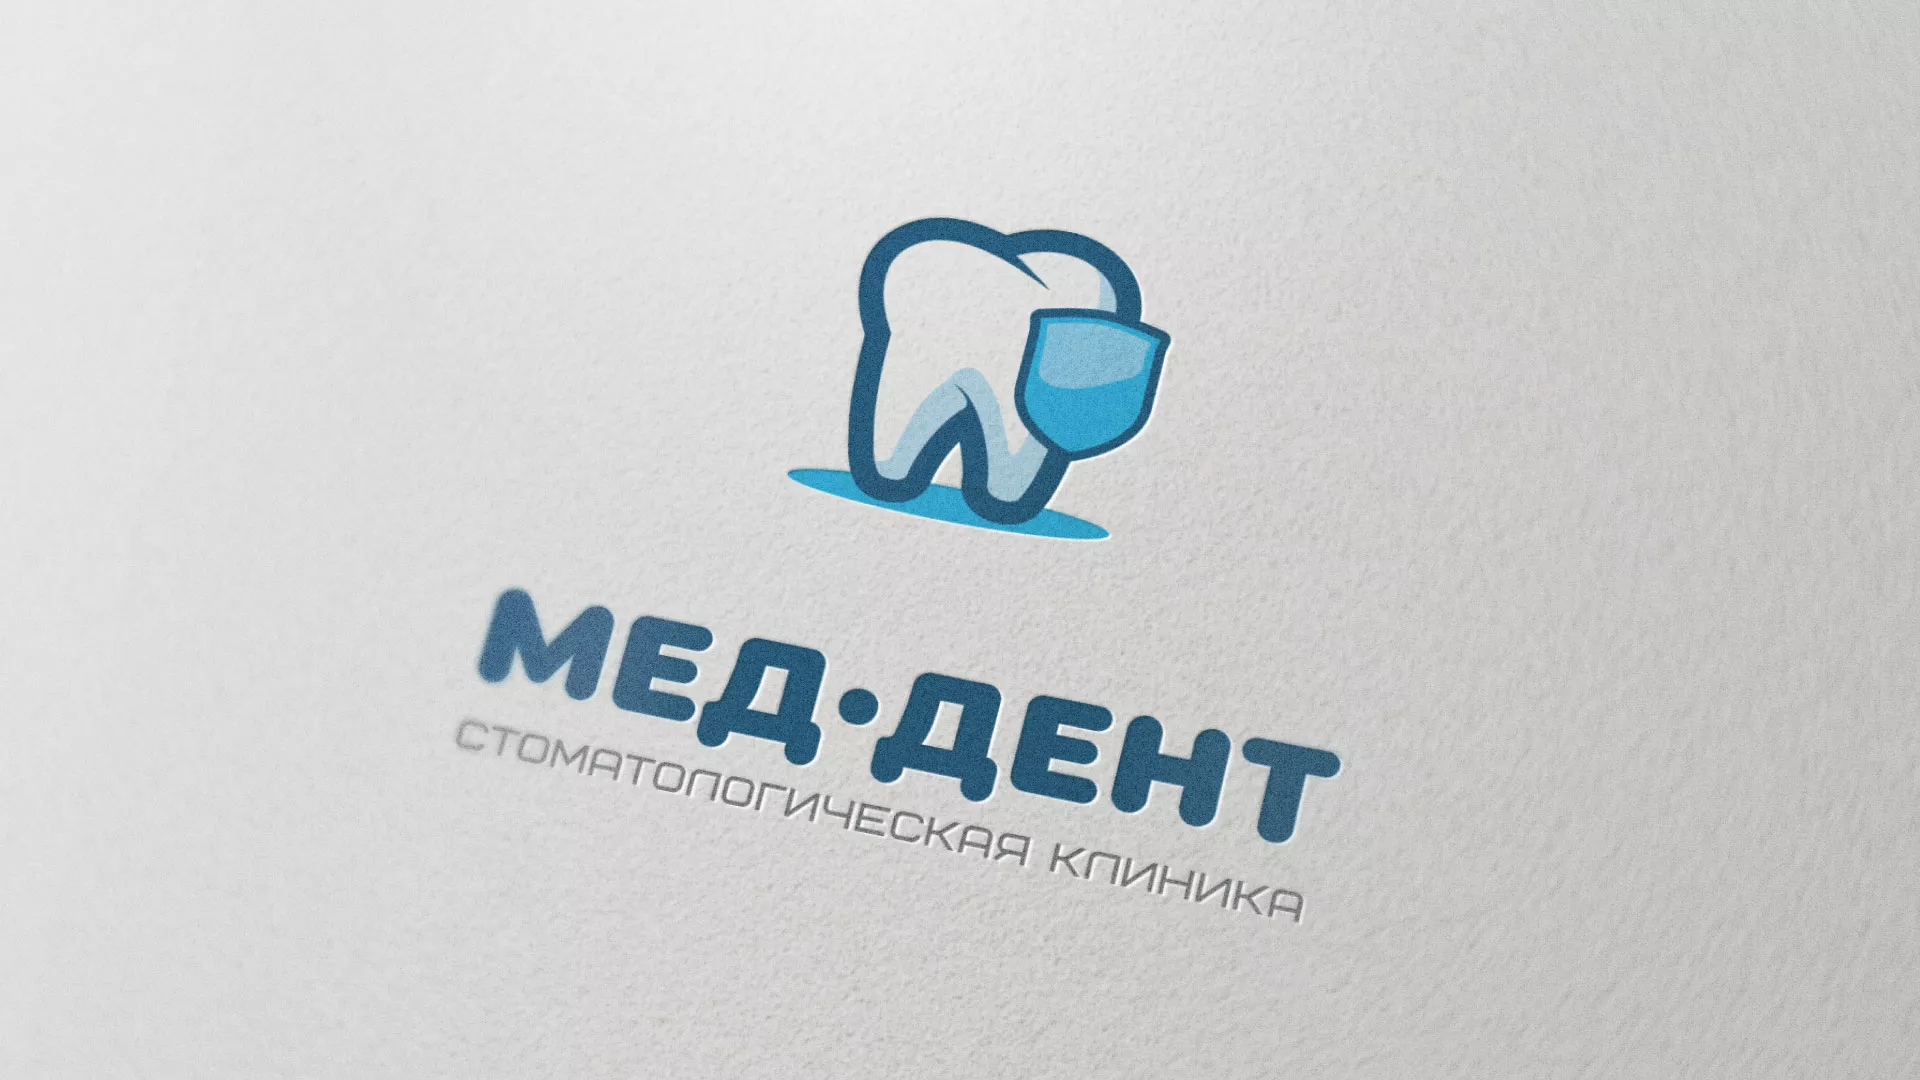 Разработка логотипа стоматологической клиники «МЕД-ДЕНТ» в Котельниково